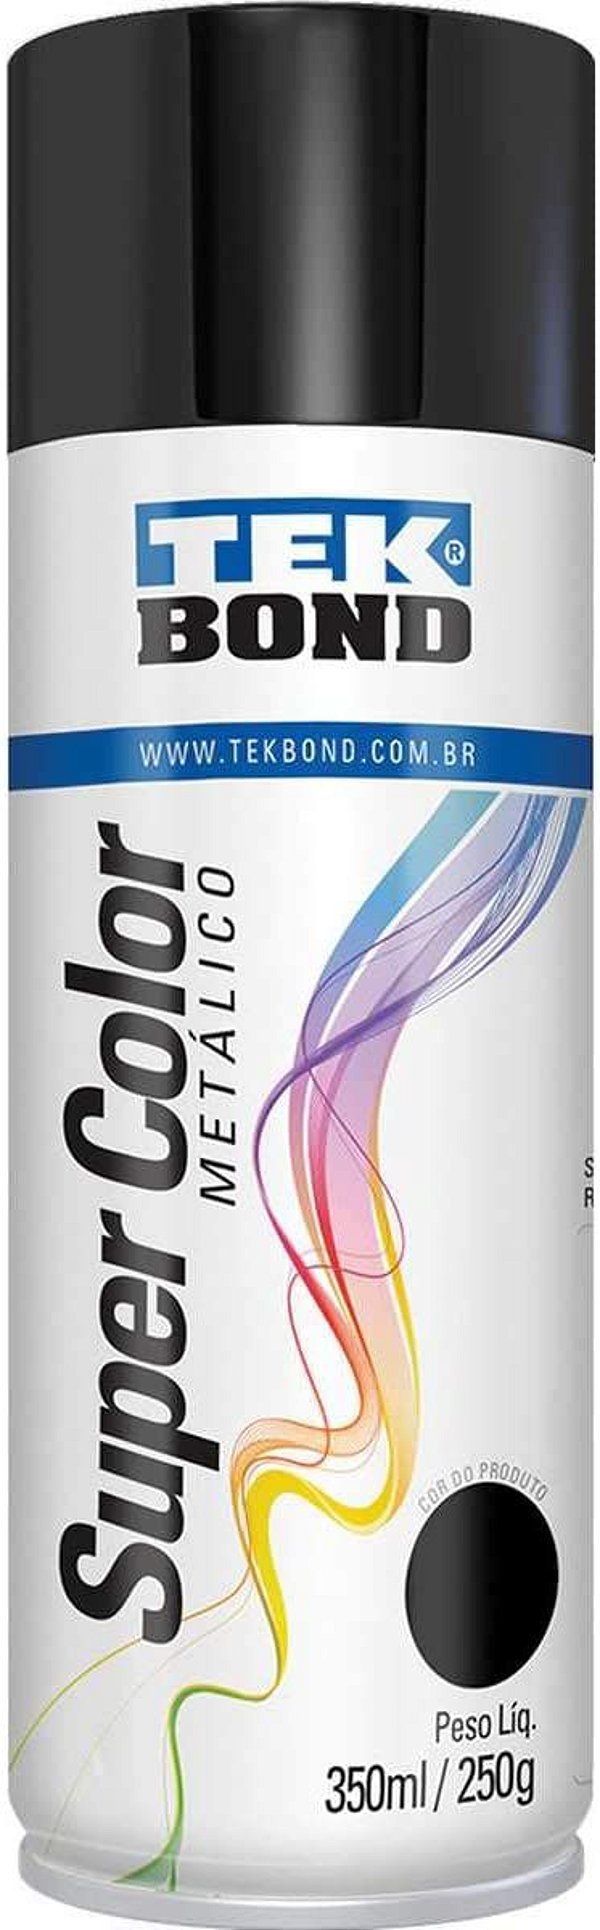 Tinta Spray 350ml Supercolor Metal Preta - Tekbond